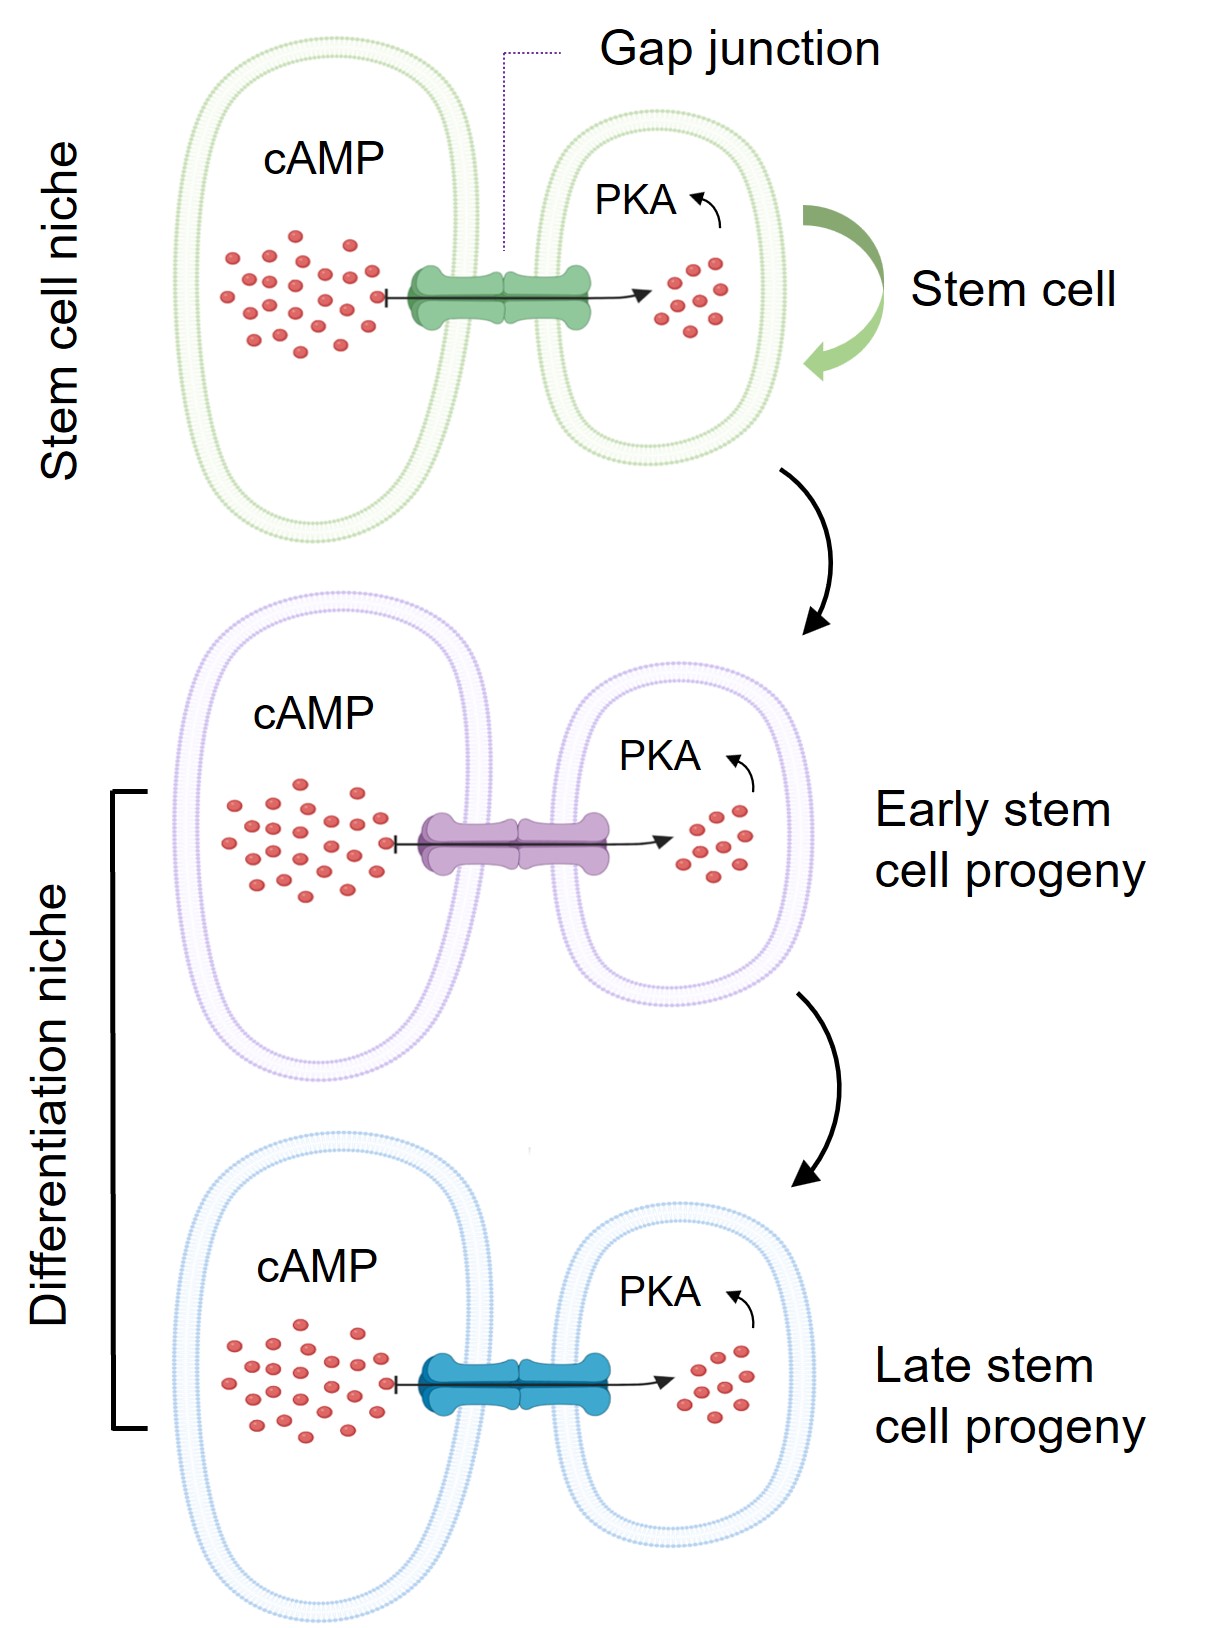 這個模型顯示幹細胞微環境如何利用其與幹細胞之間的蛋白通道「間隙連接」（Gap junction），把幹細胞微環境內的cAMP傳送到幹細胞及其子代細胞，以控制其分化為各種功能性細胞